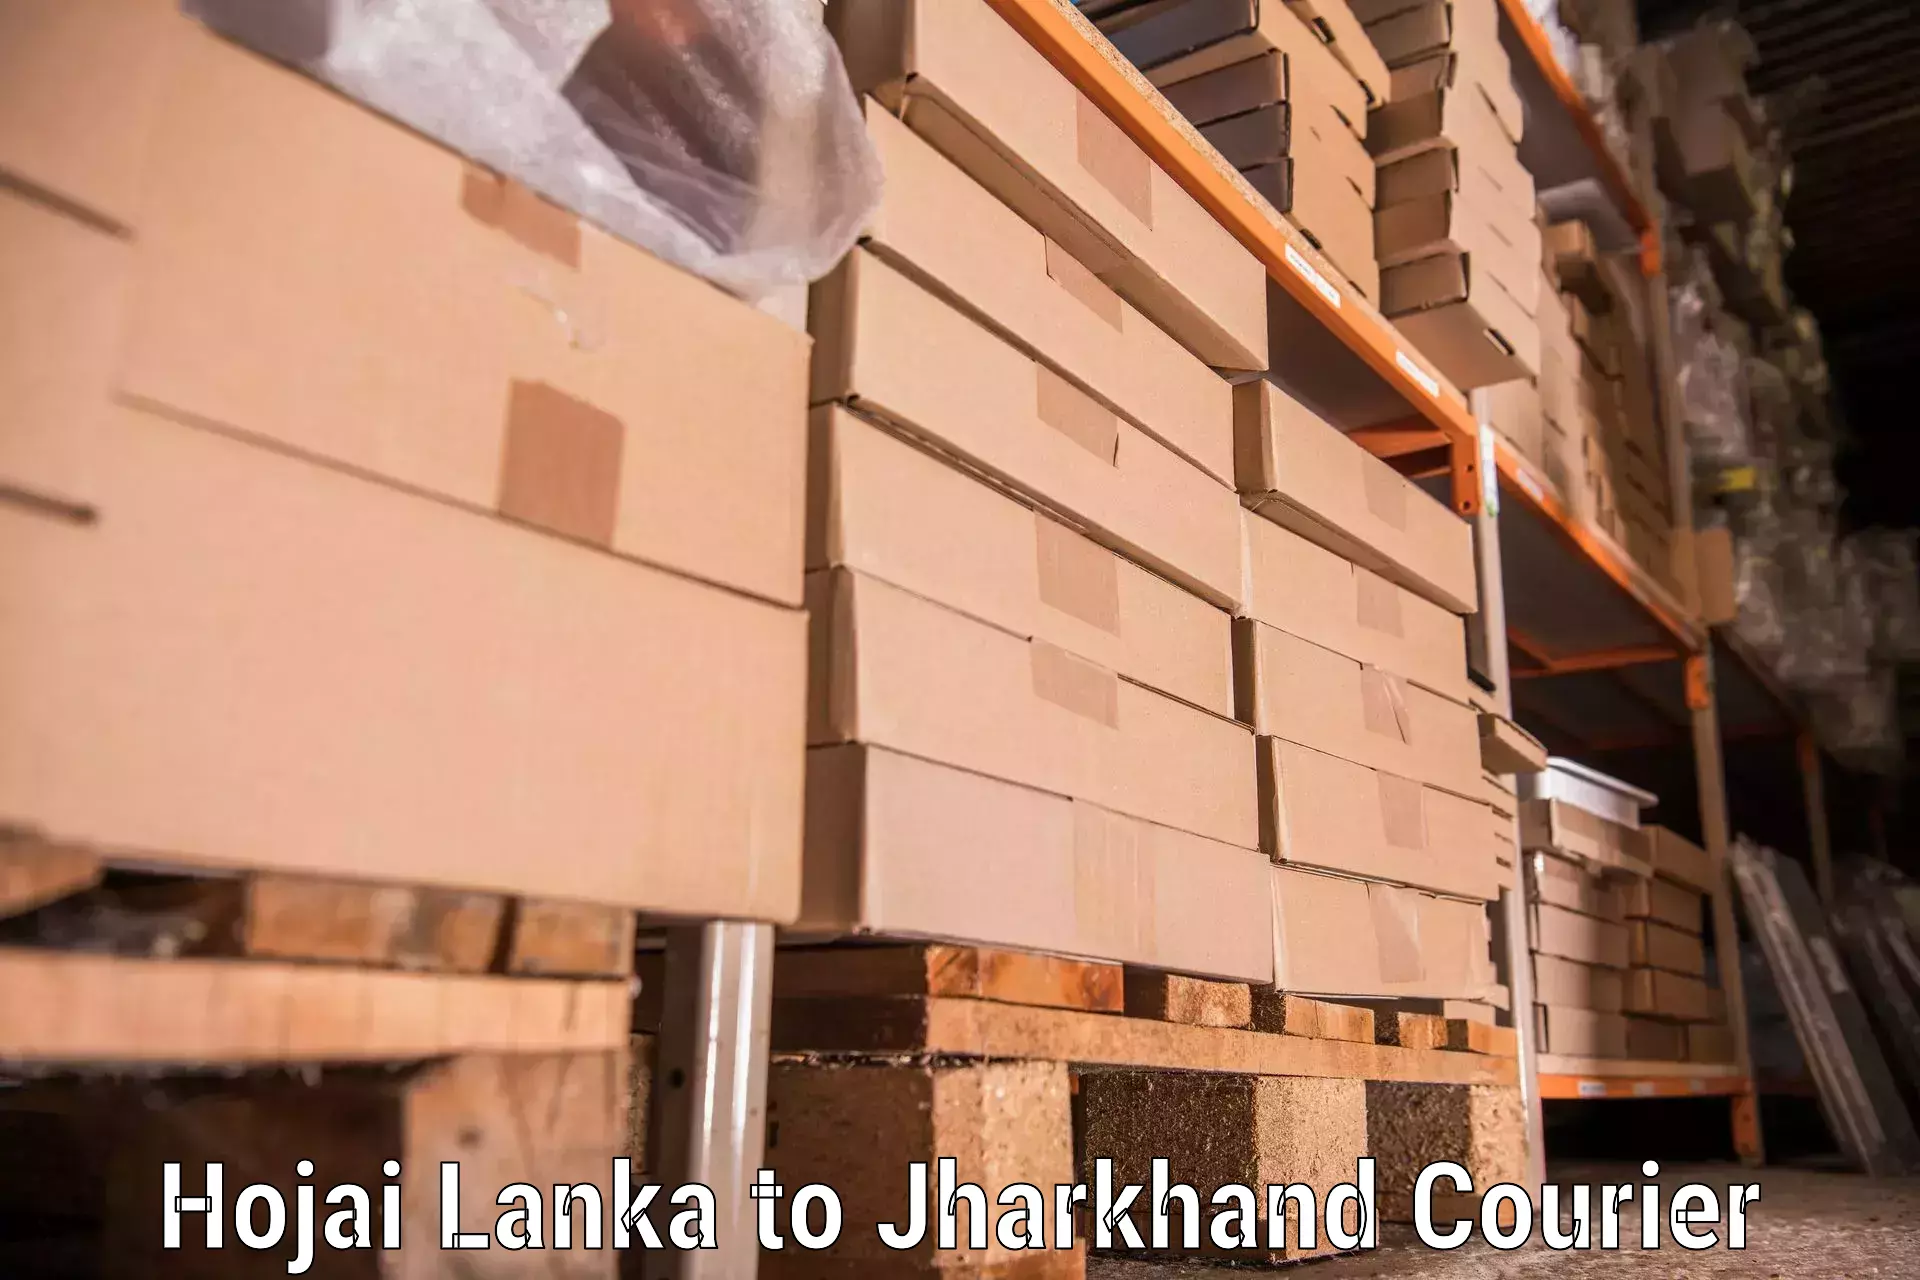 Safe household movers Hojai Lanka to Tandwa